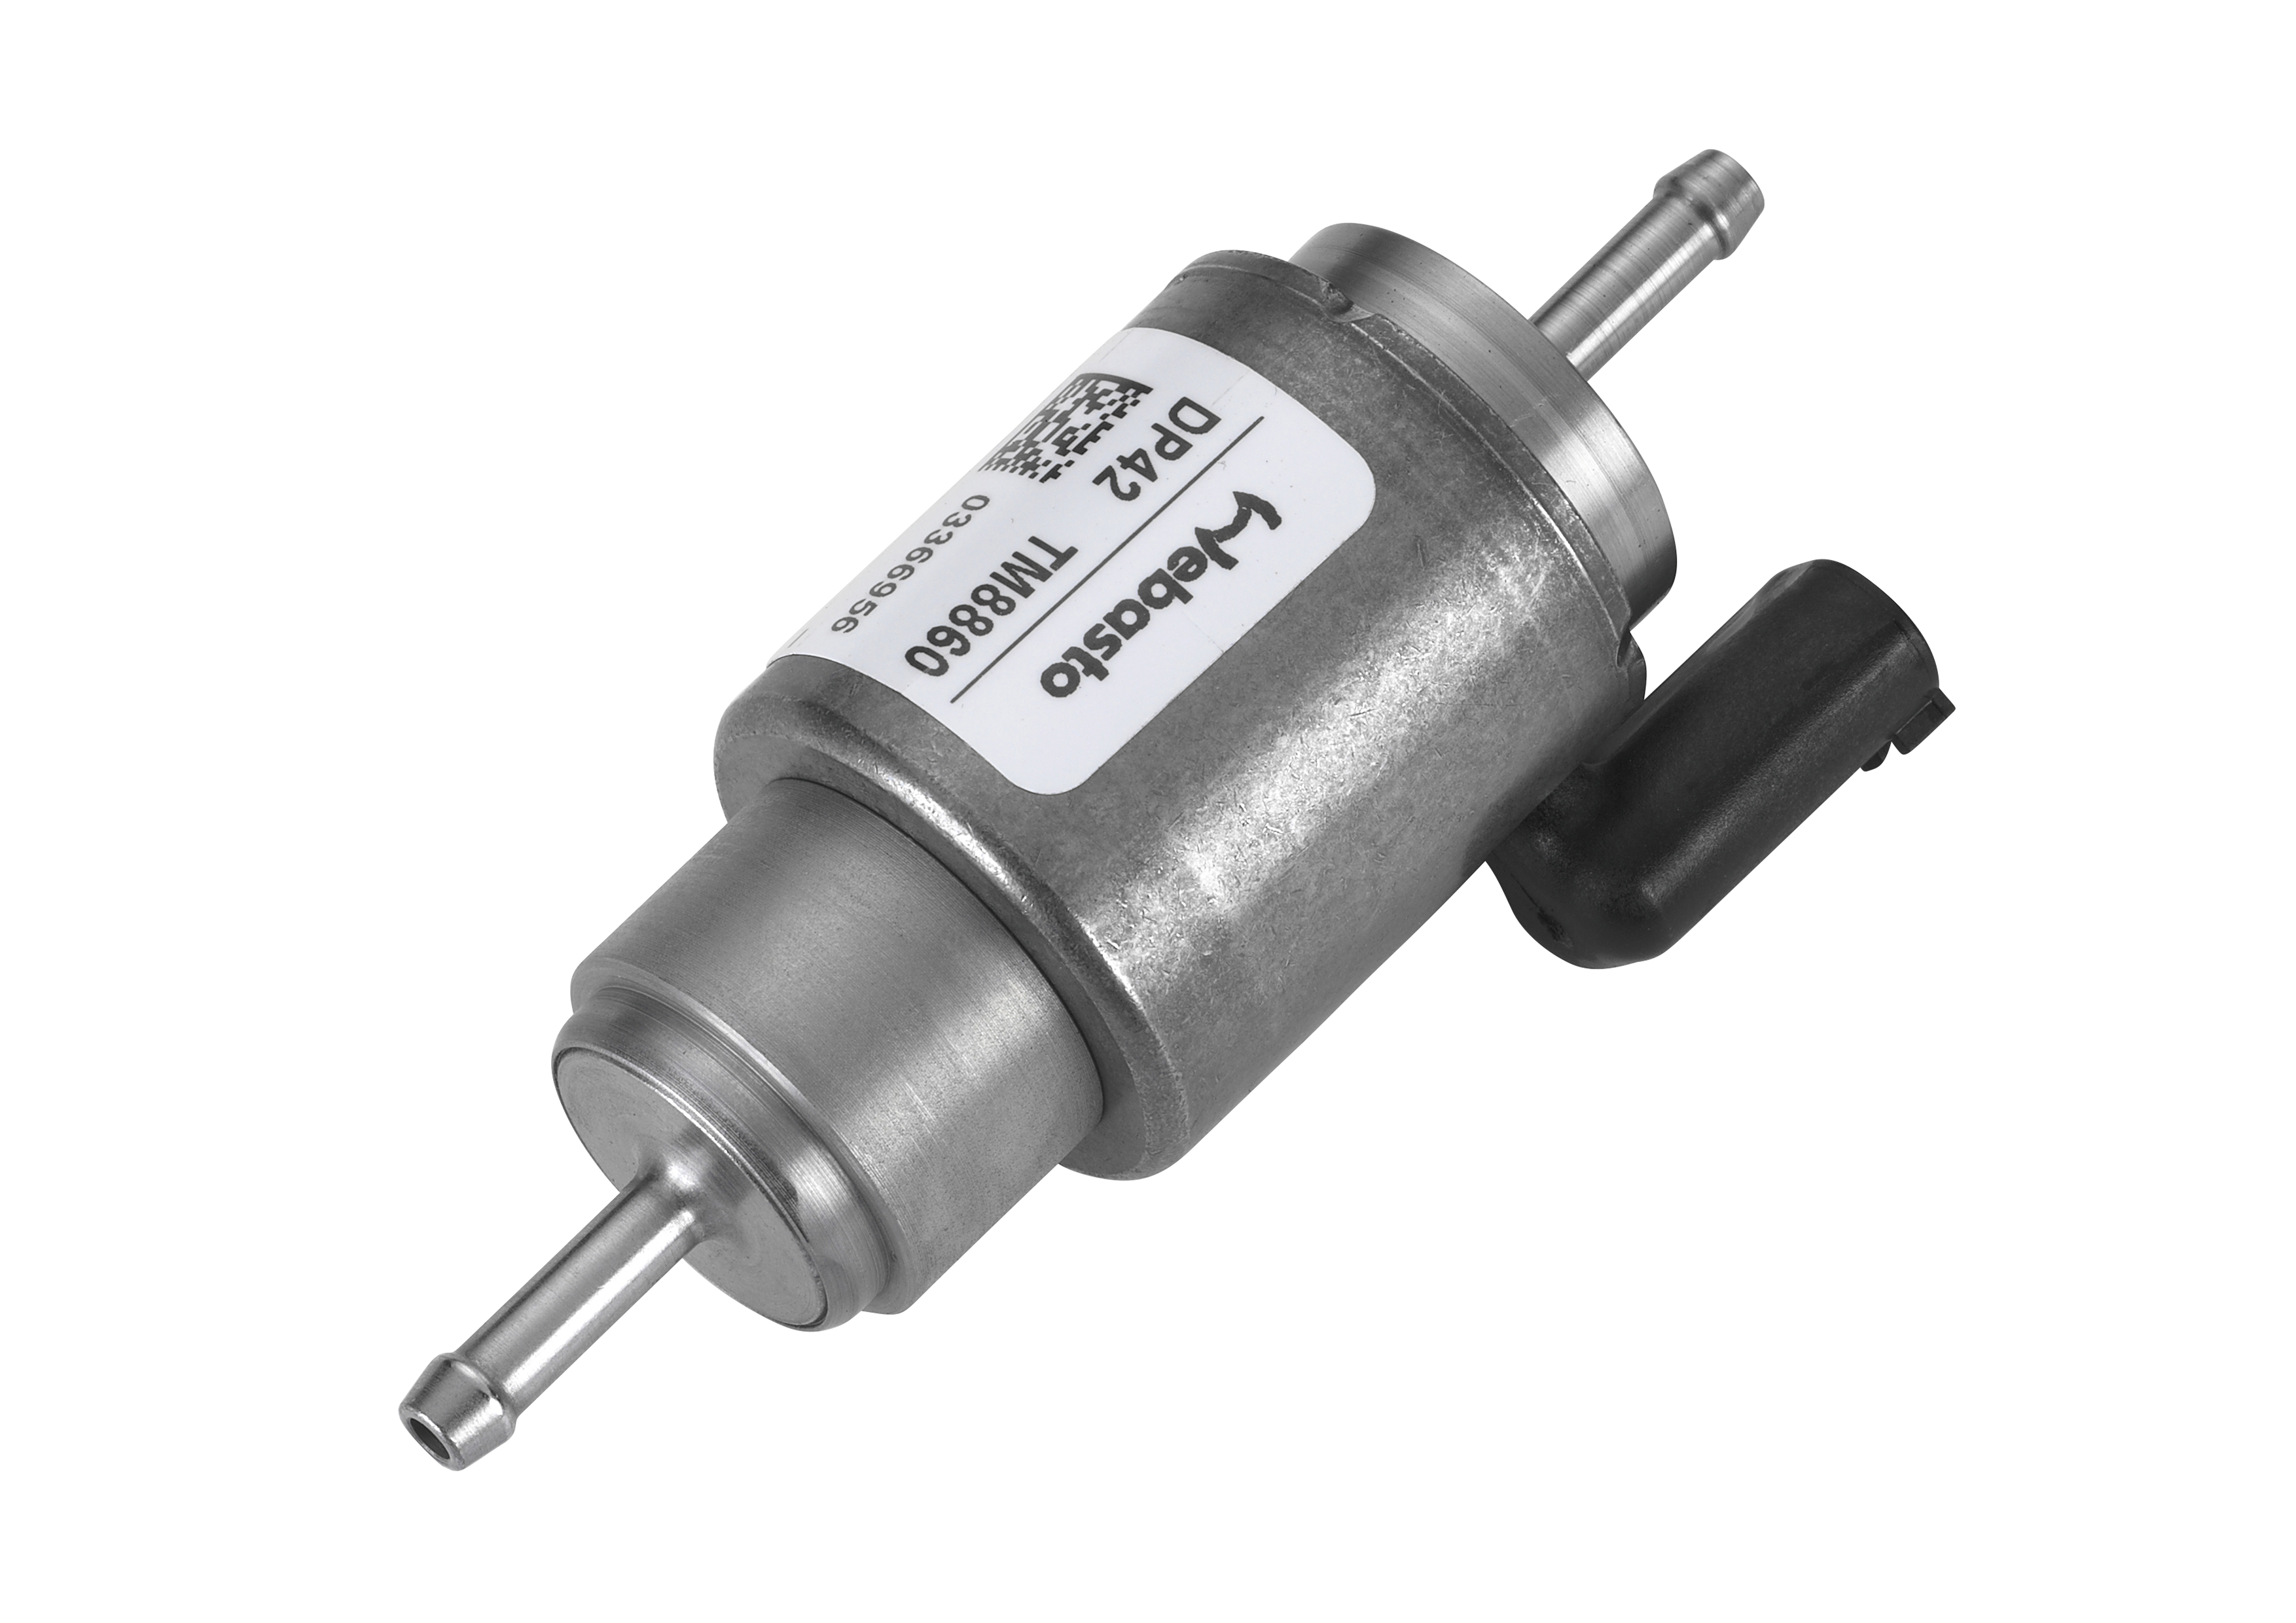 Dosierpumpe Pumpe Standheizung Thermo Top EVO Webasto DP42 TM8860 VW Audi  Origin